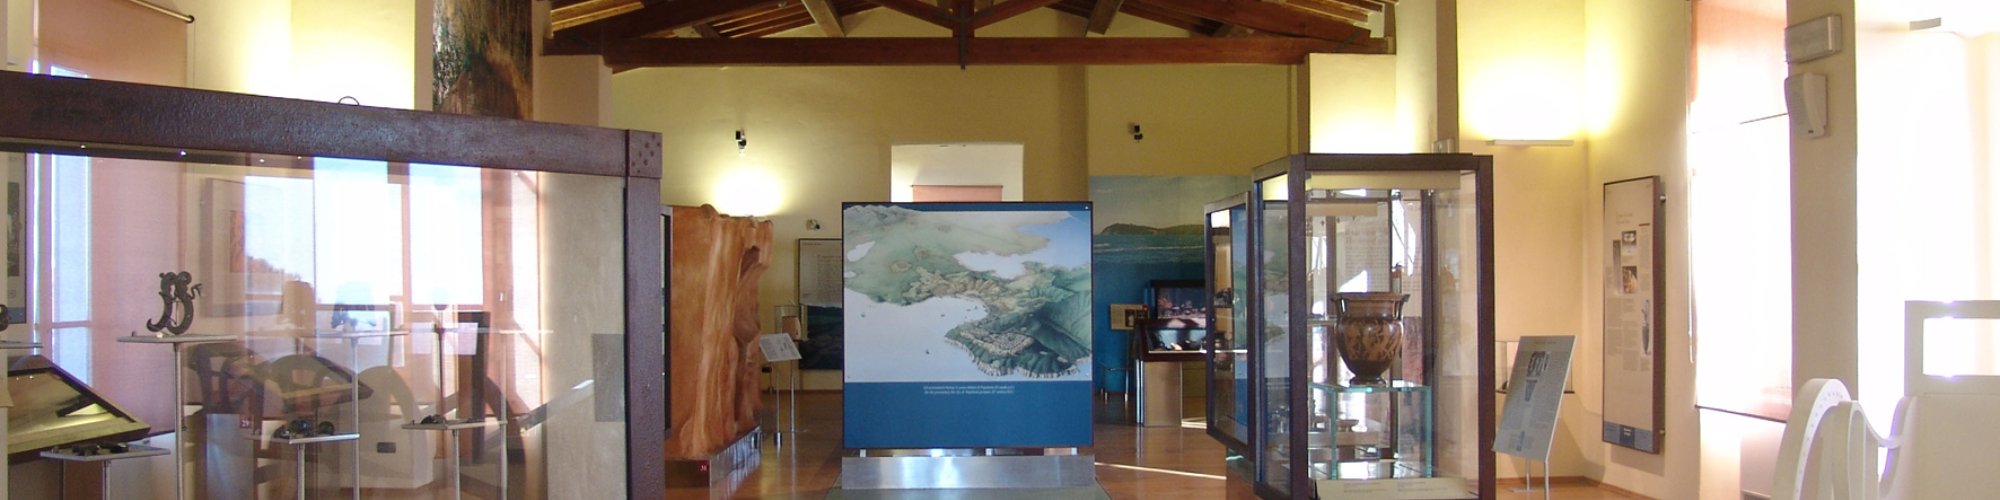 Museo Archeologico di Piombino in Val di Cornia